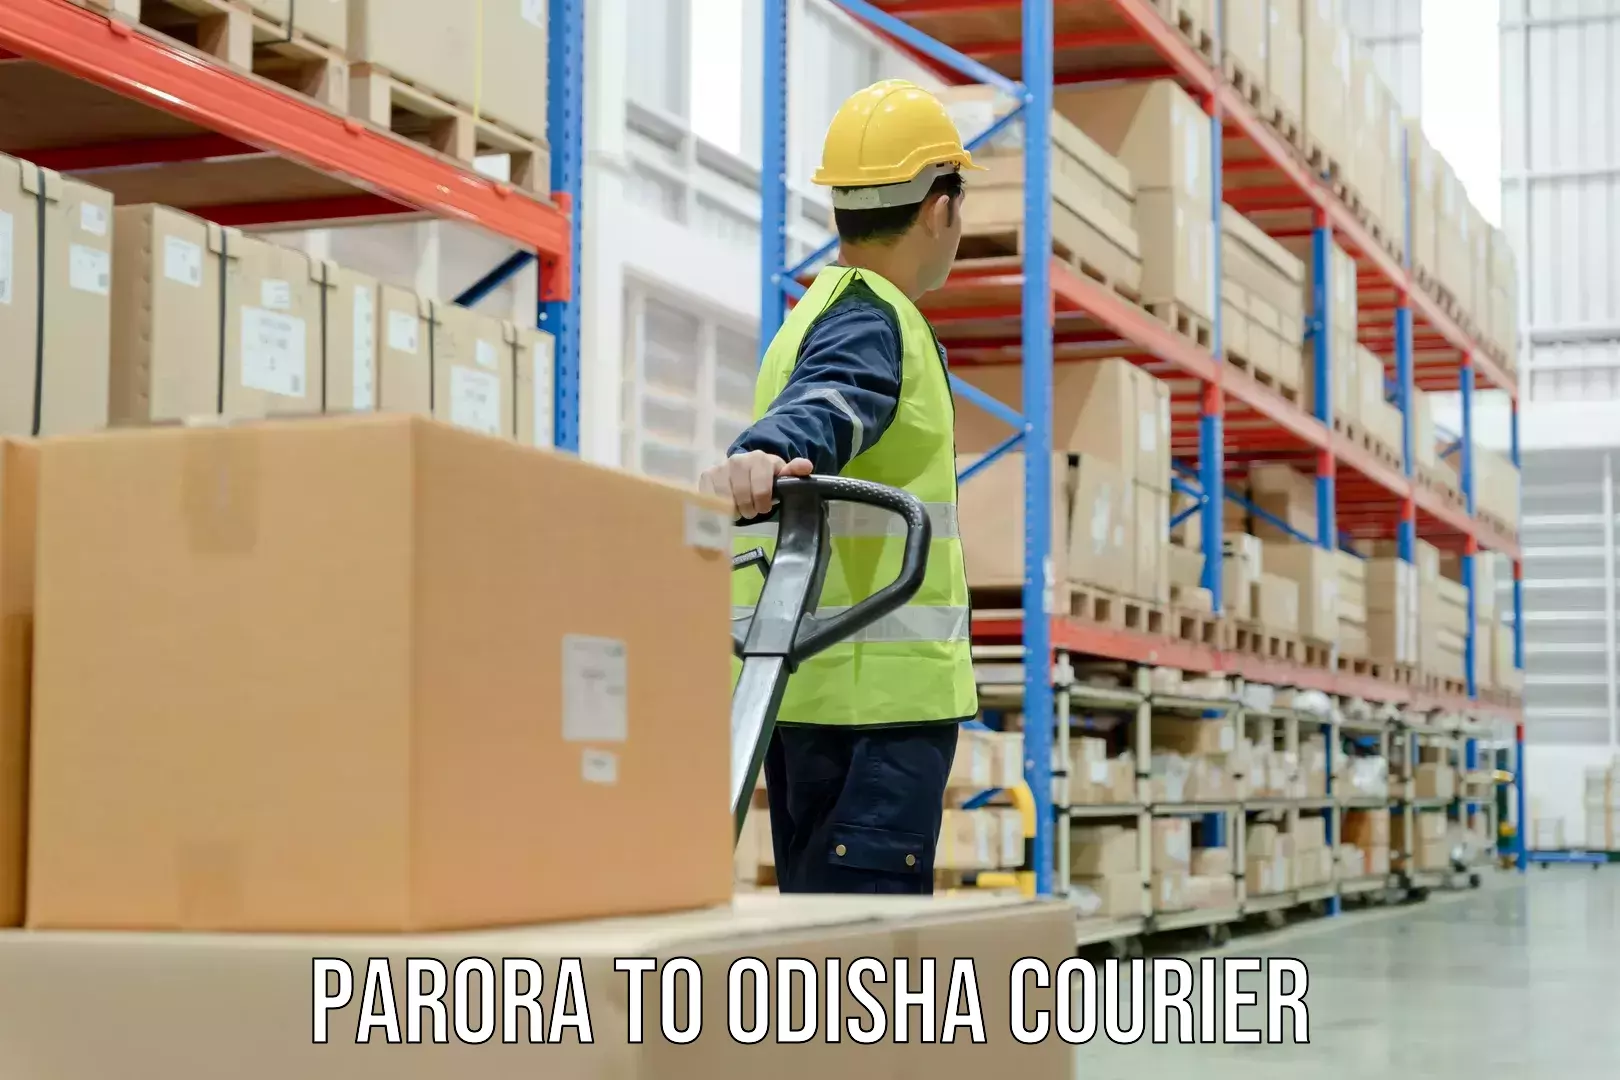 Digital courier platforms Parora to Mohana